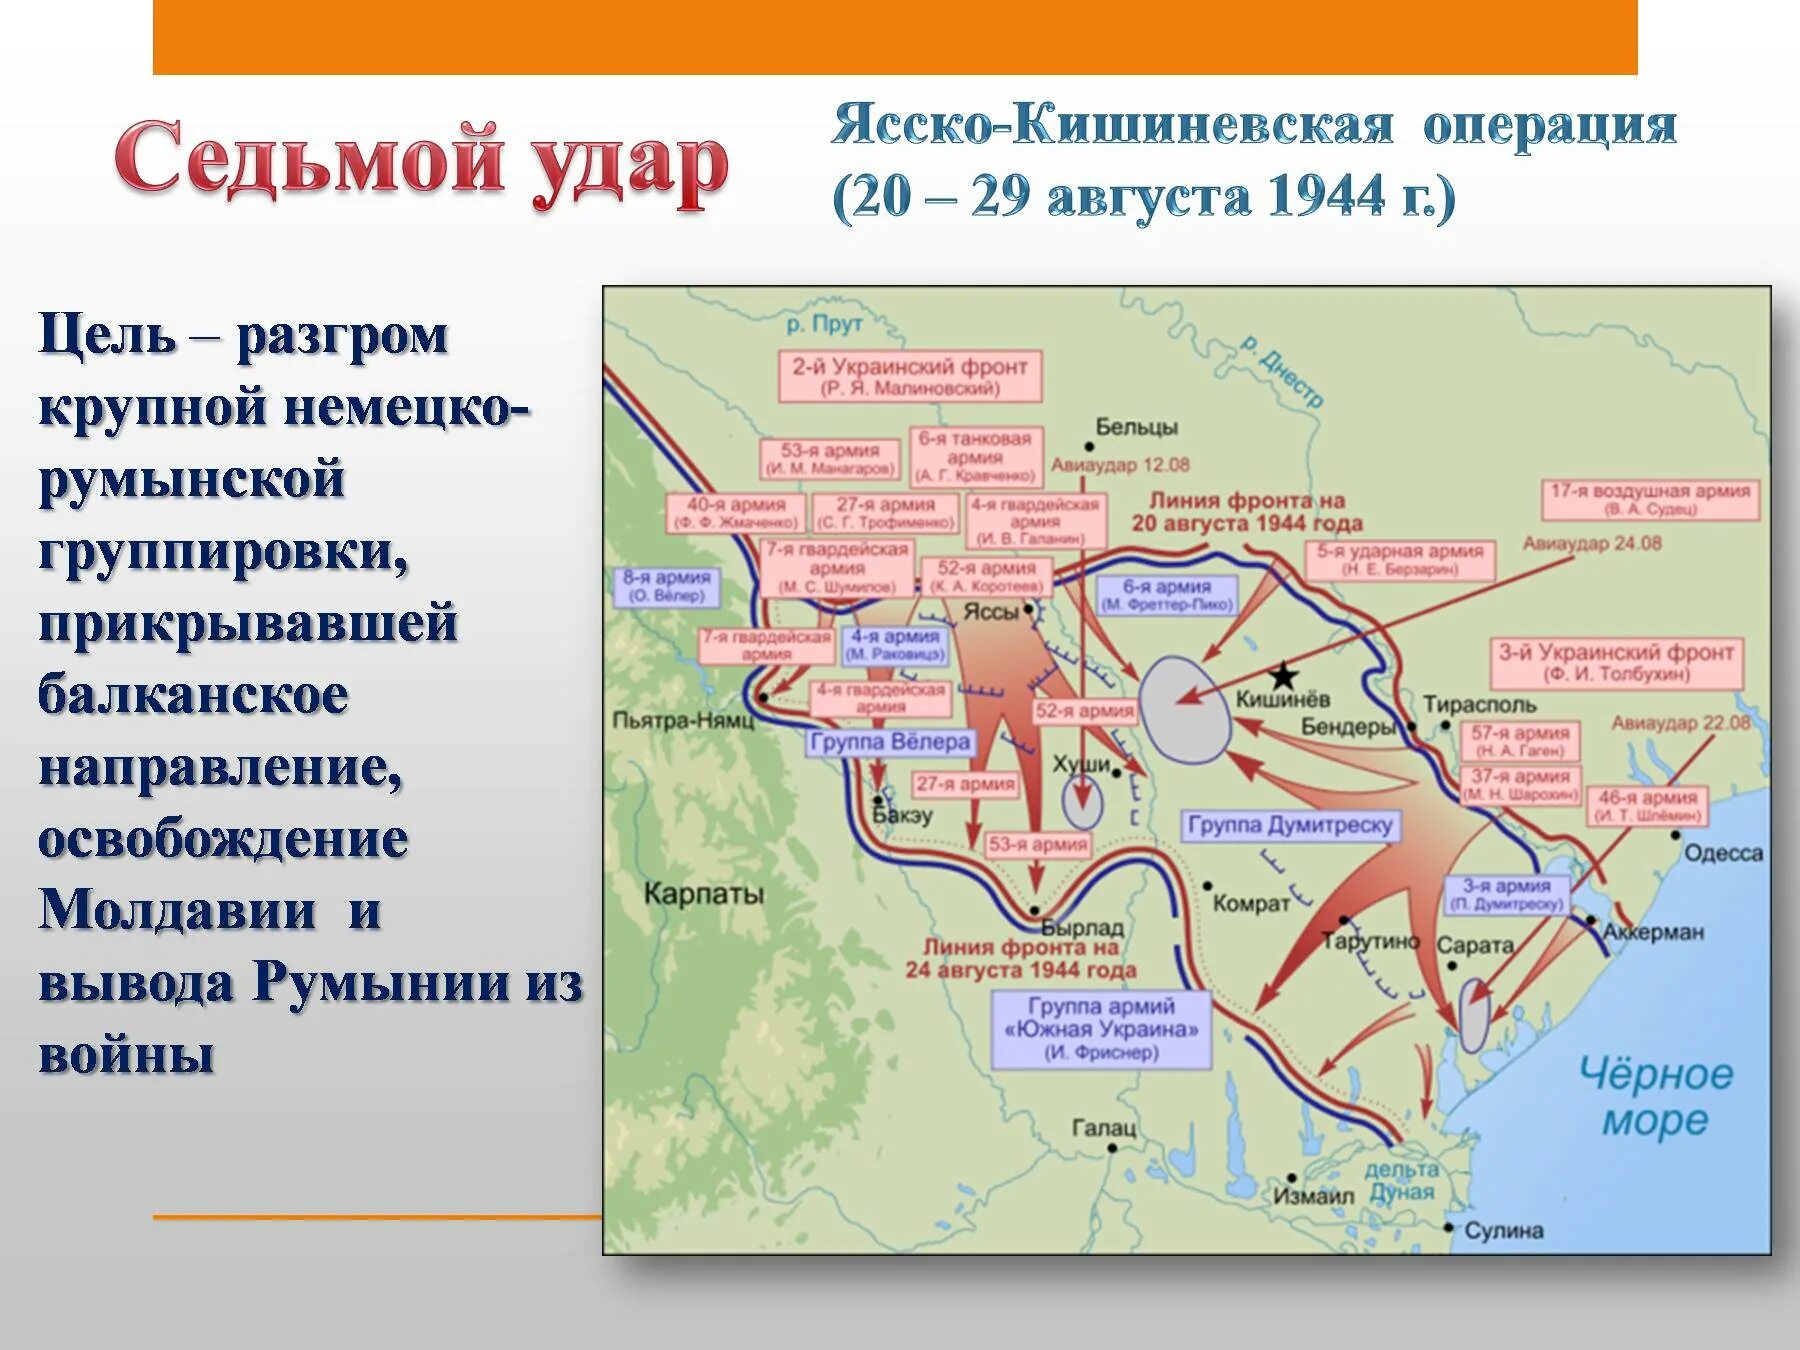 Ясско-Кишинёвская наступательная операция (август—сентябрь 1944 г.). Освобождение Молдавии Ясско Кишиневская операция. Ясско- Кишиневская операция 20 -29 августа 1944 года. Седьмой удар Ясско-Кишиневская операция.